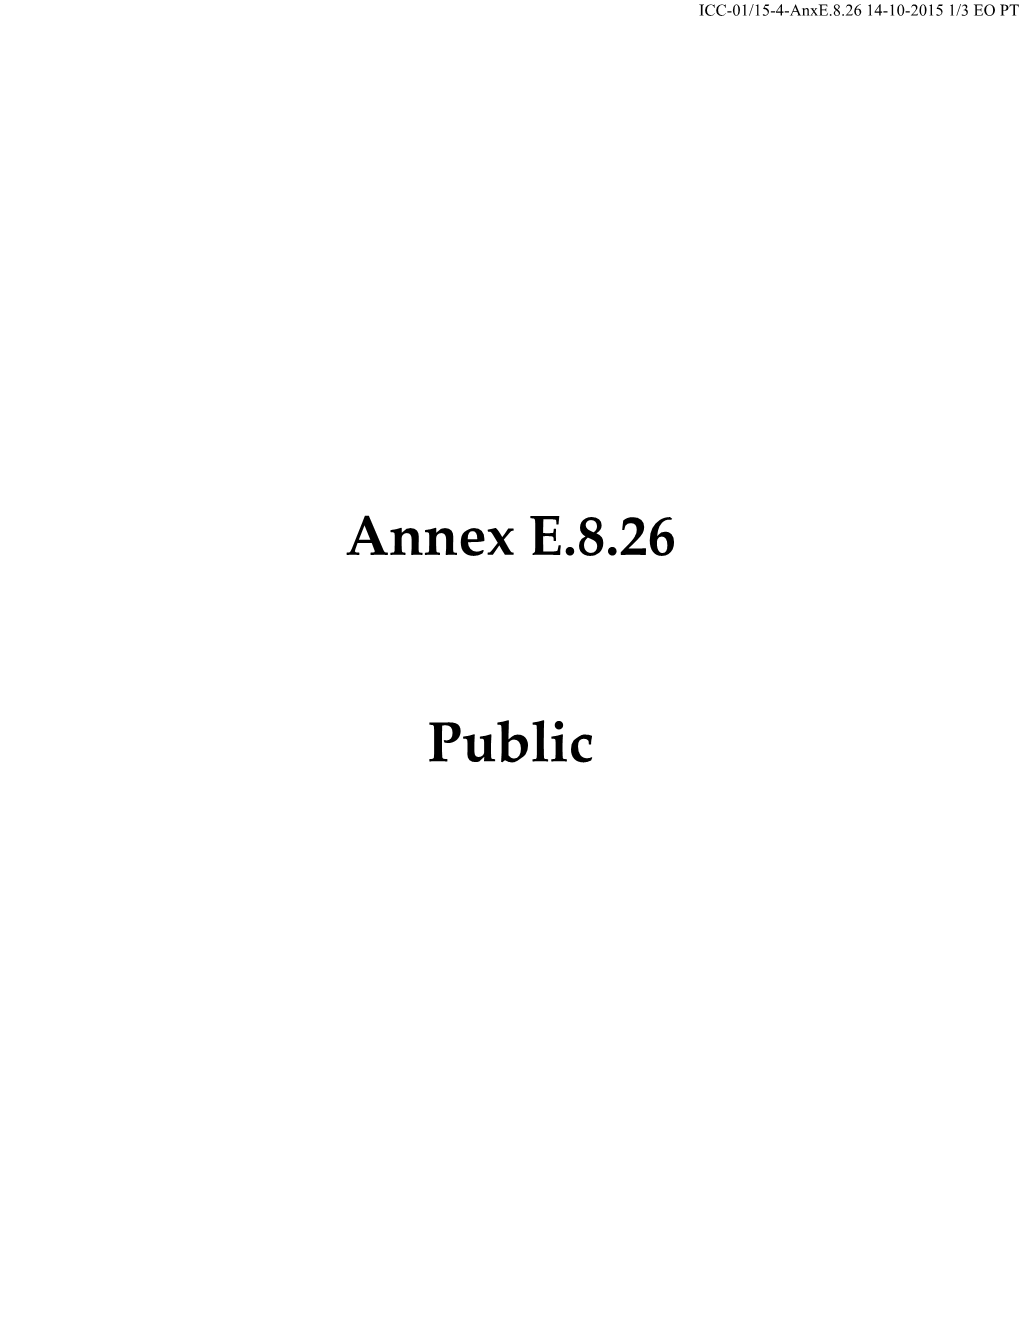 Annex E.8.26 Public